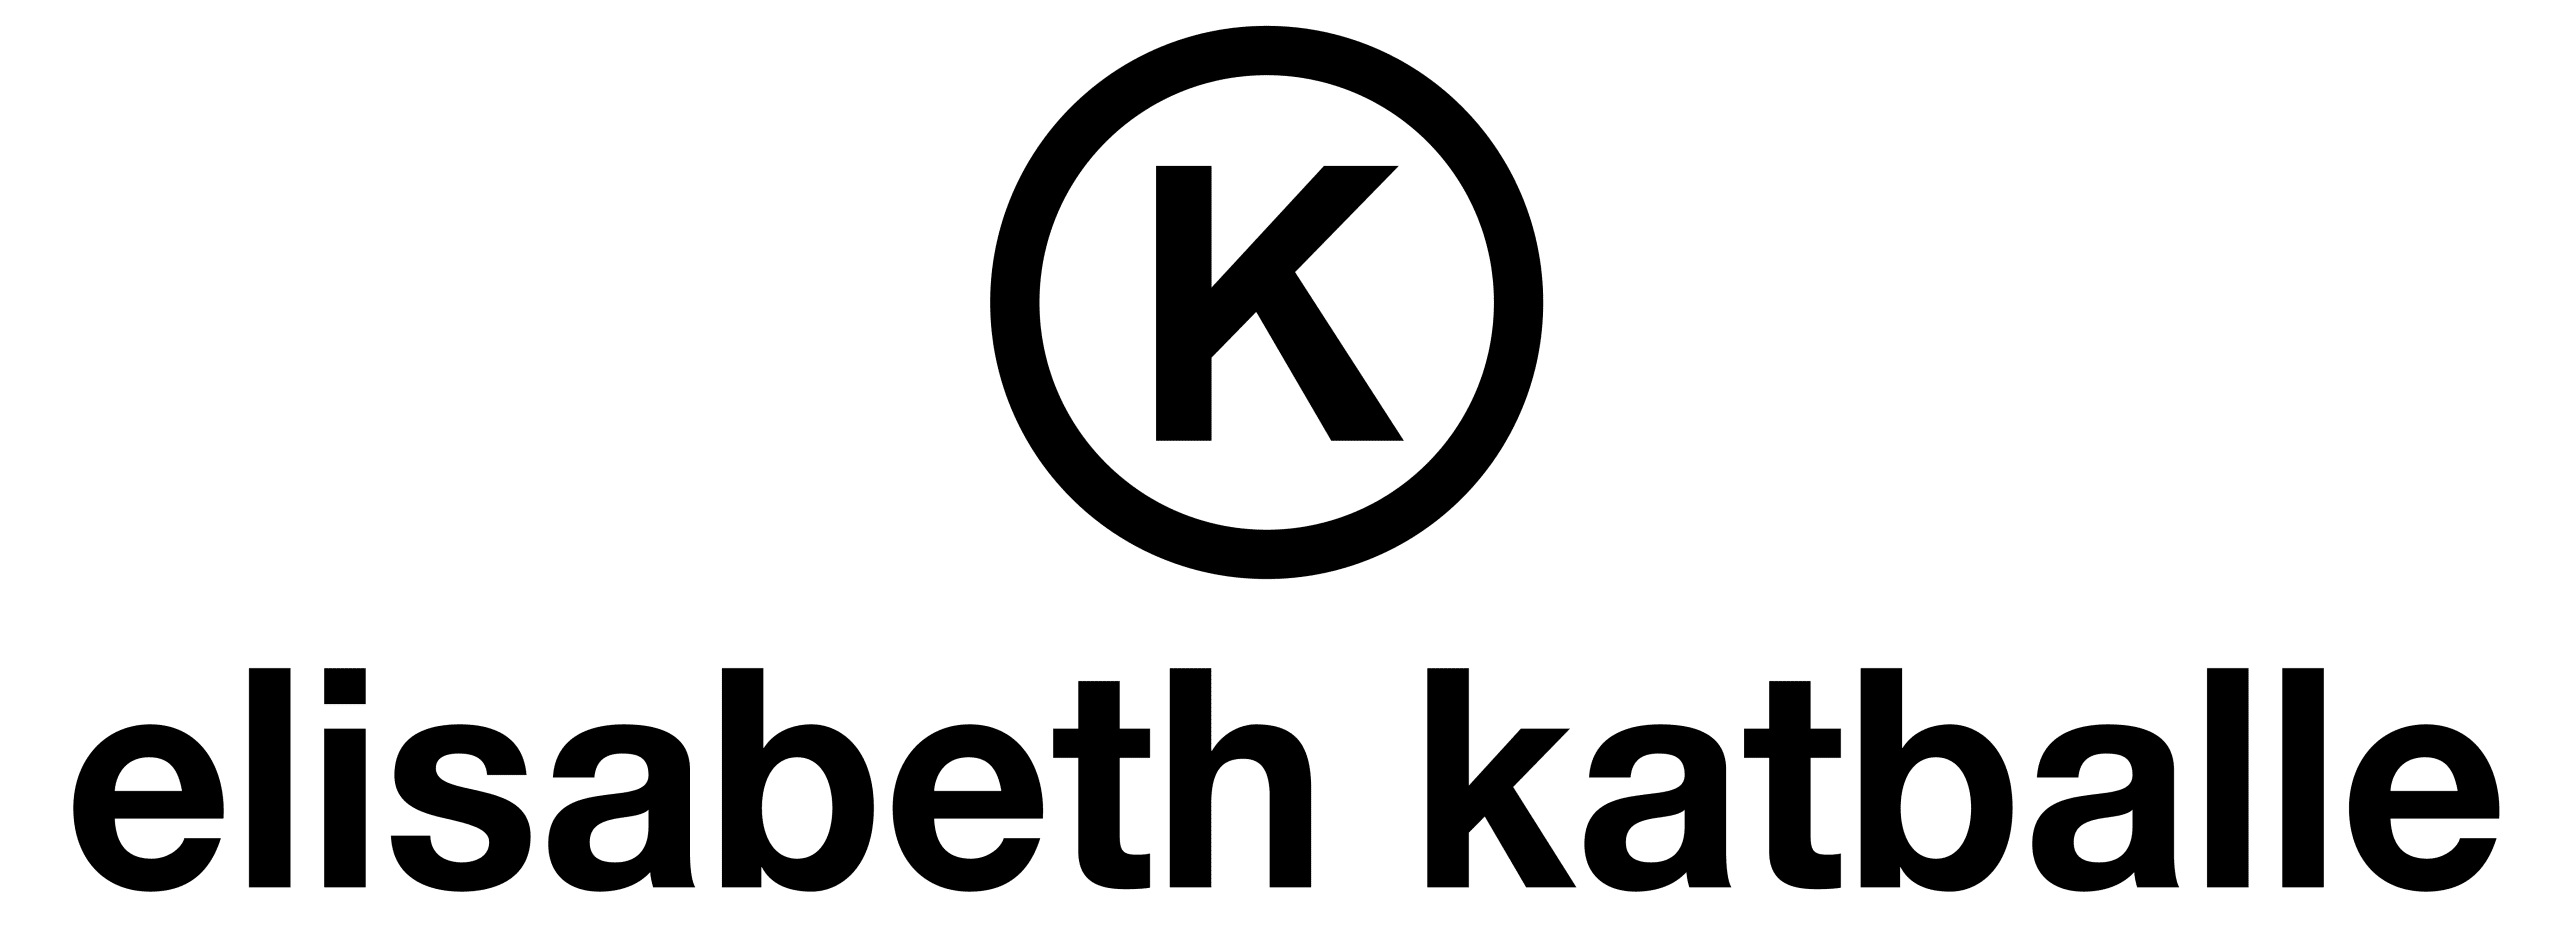 Elisabeth Katballe logo